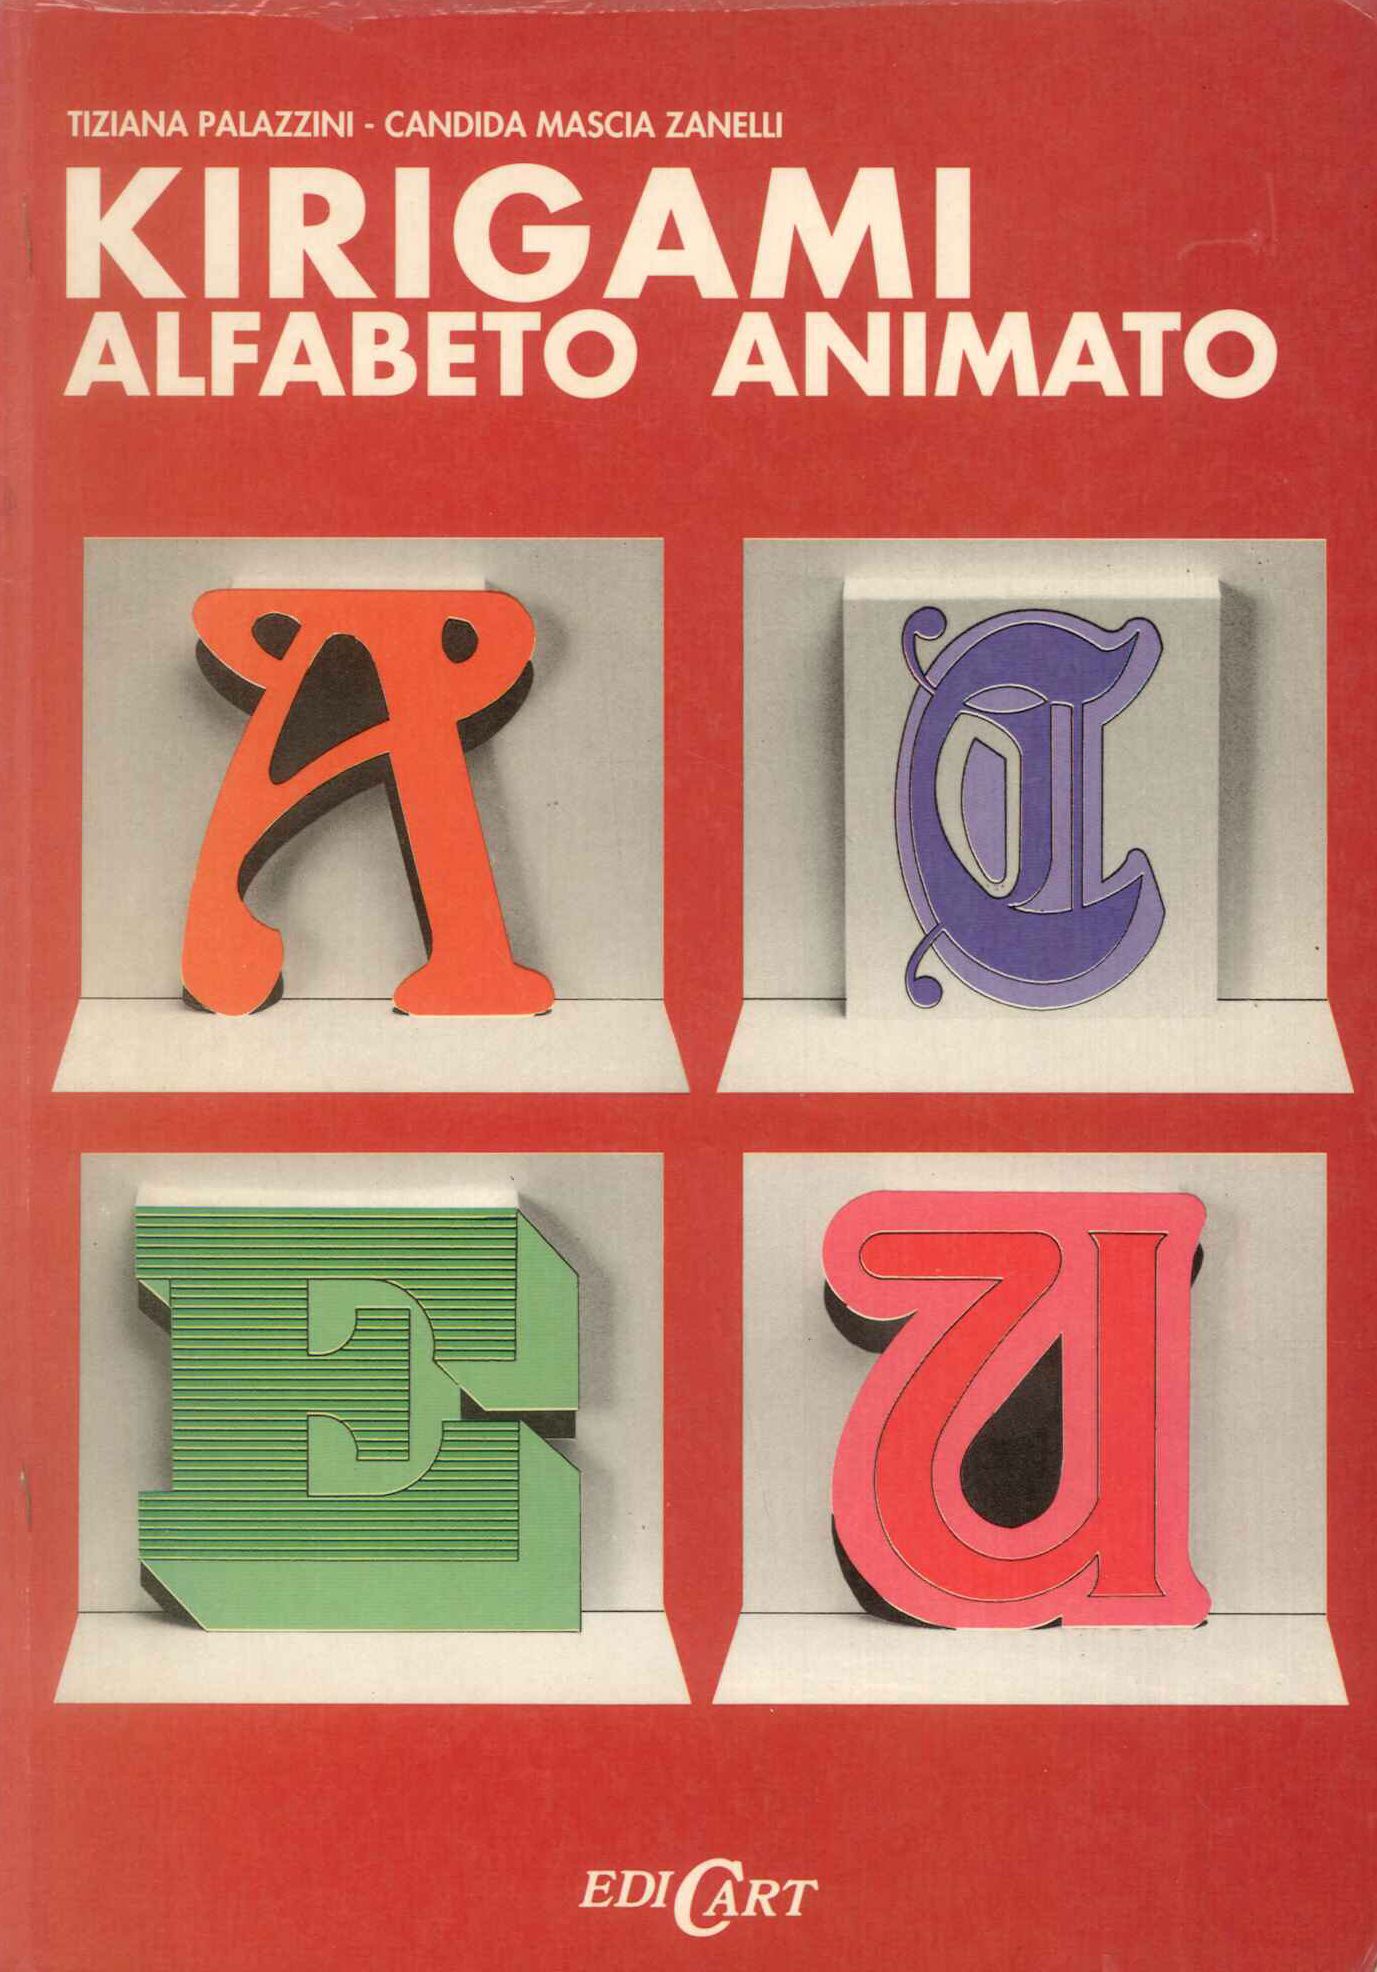 Kirigami alfabeto animato